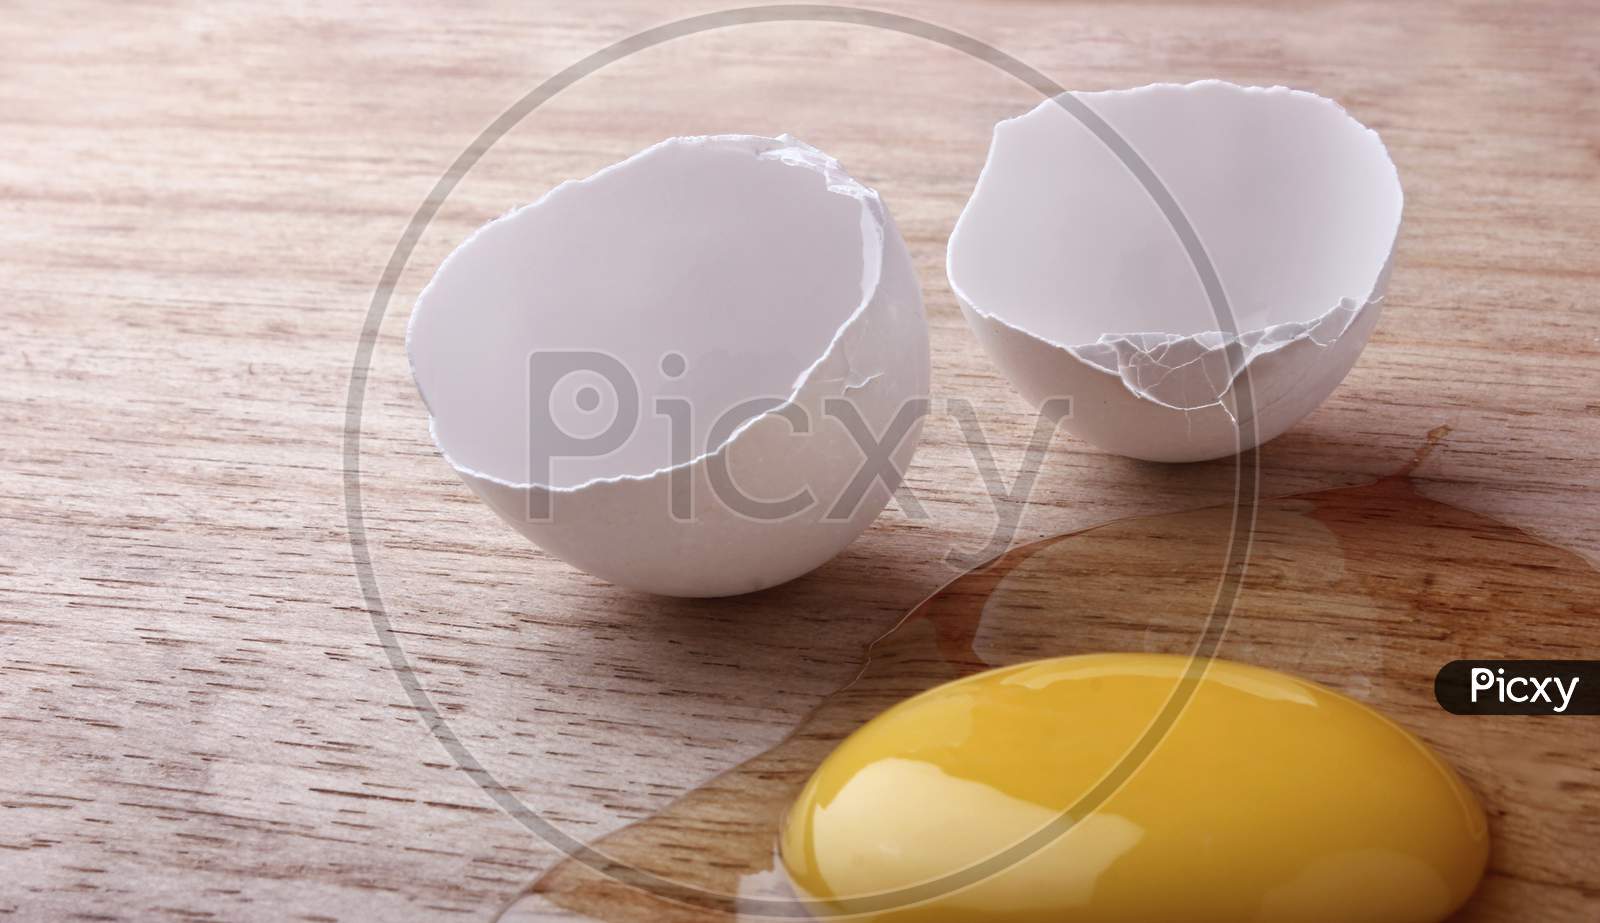 Egg break On an Wooden Table